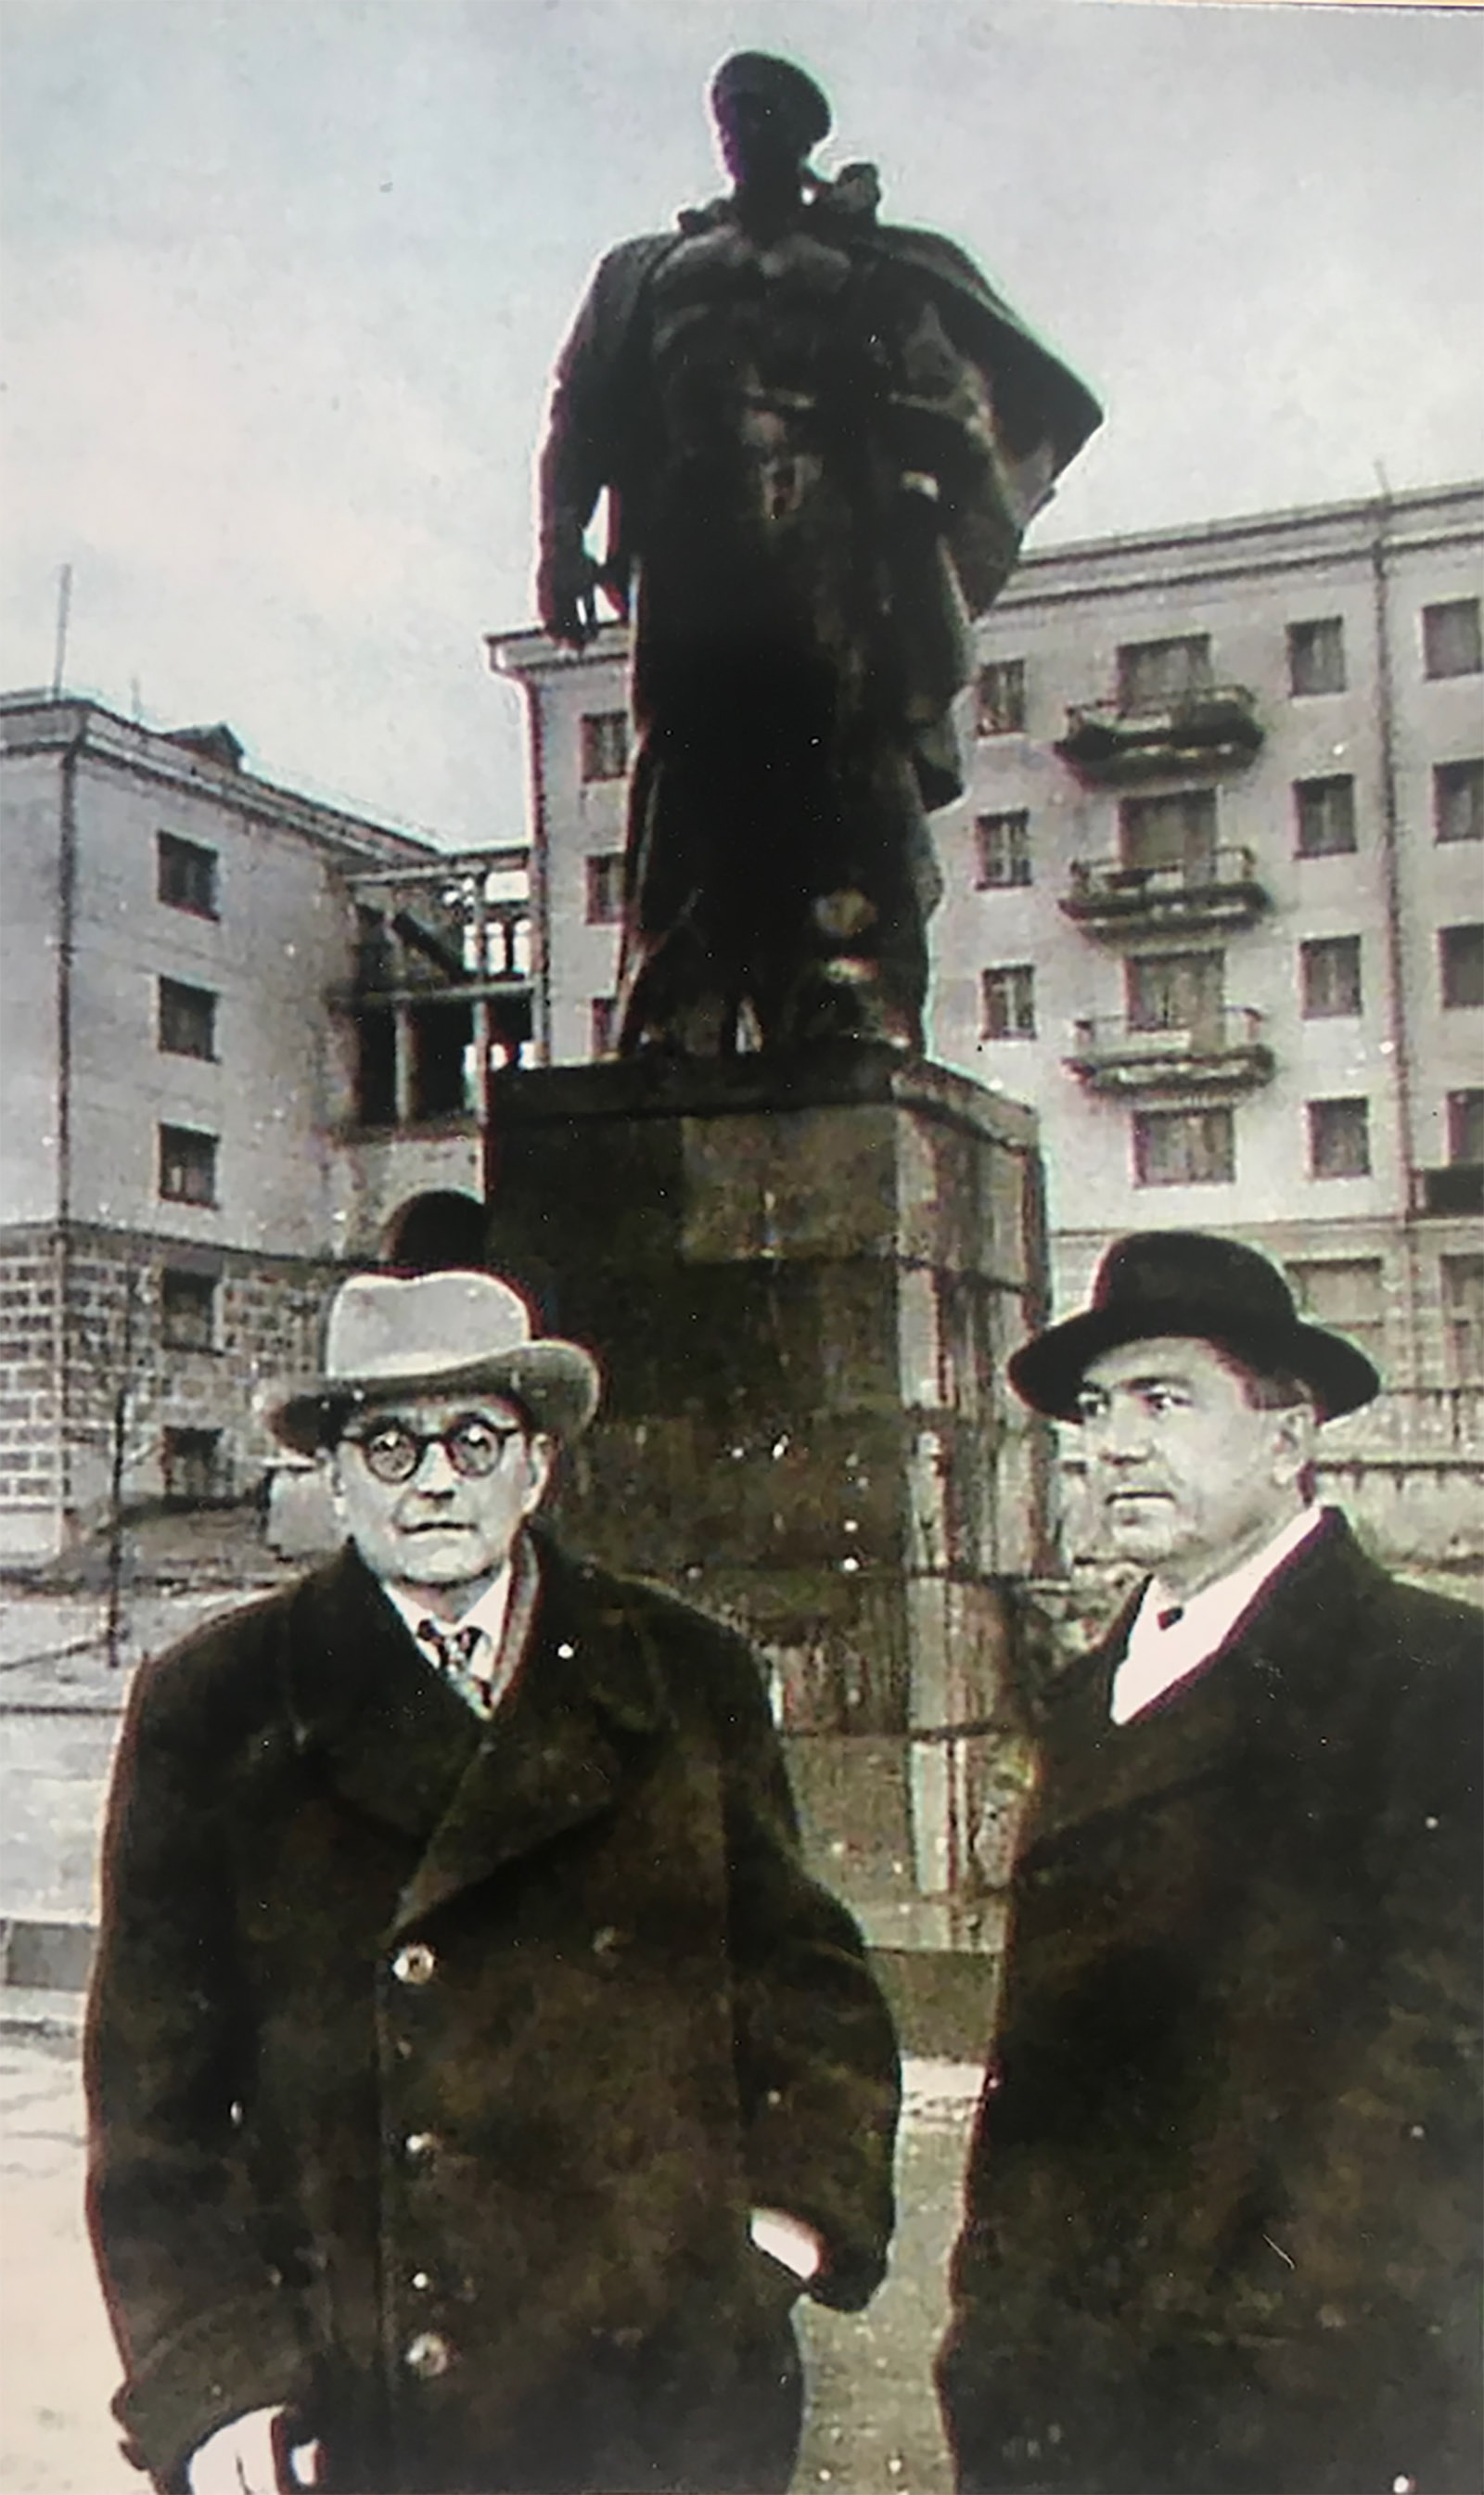 Dmitri Shostakovich with Anatoly Alexandrov, the author’s grandfather, Novorossiysk, Russia, 1961